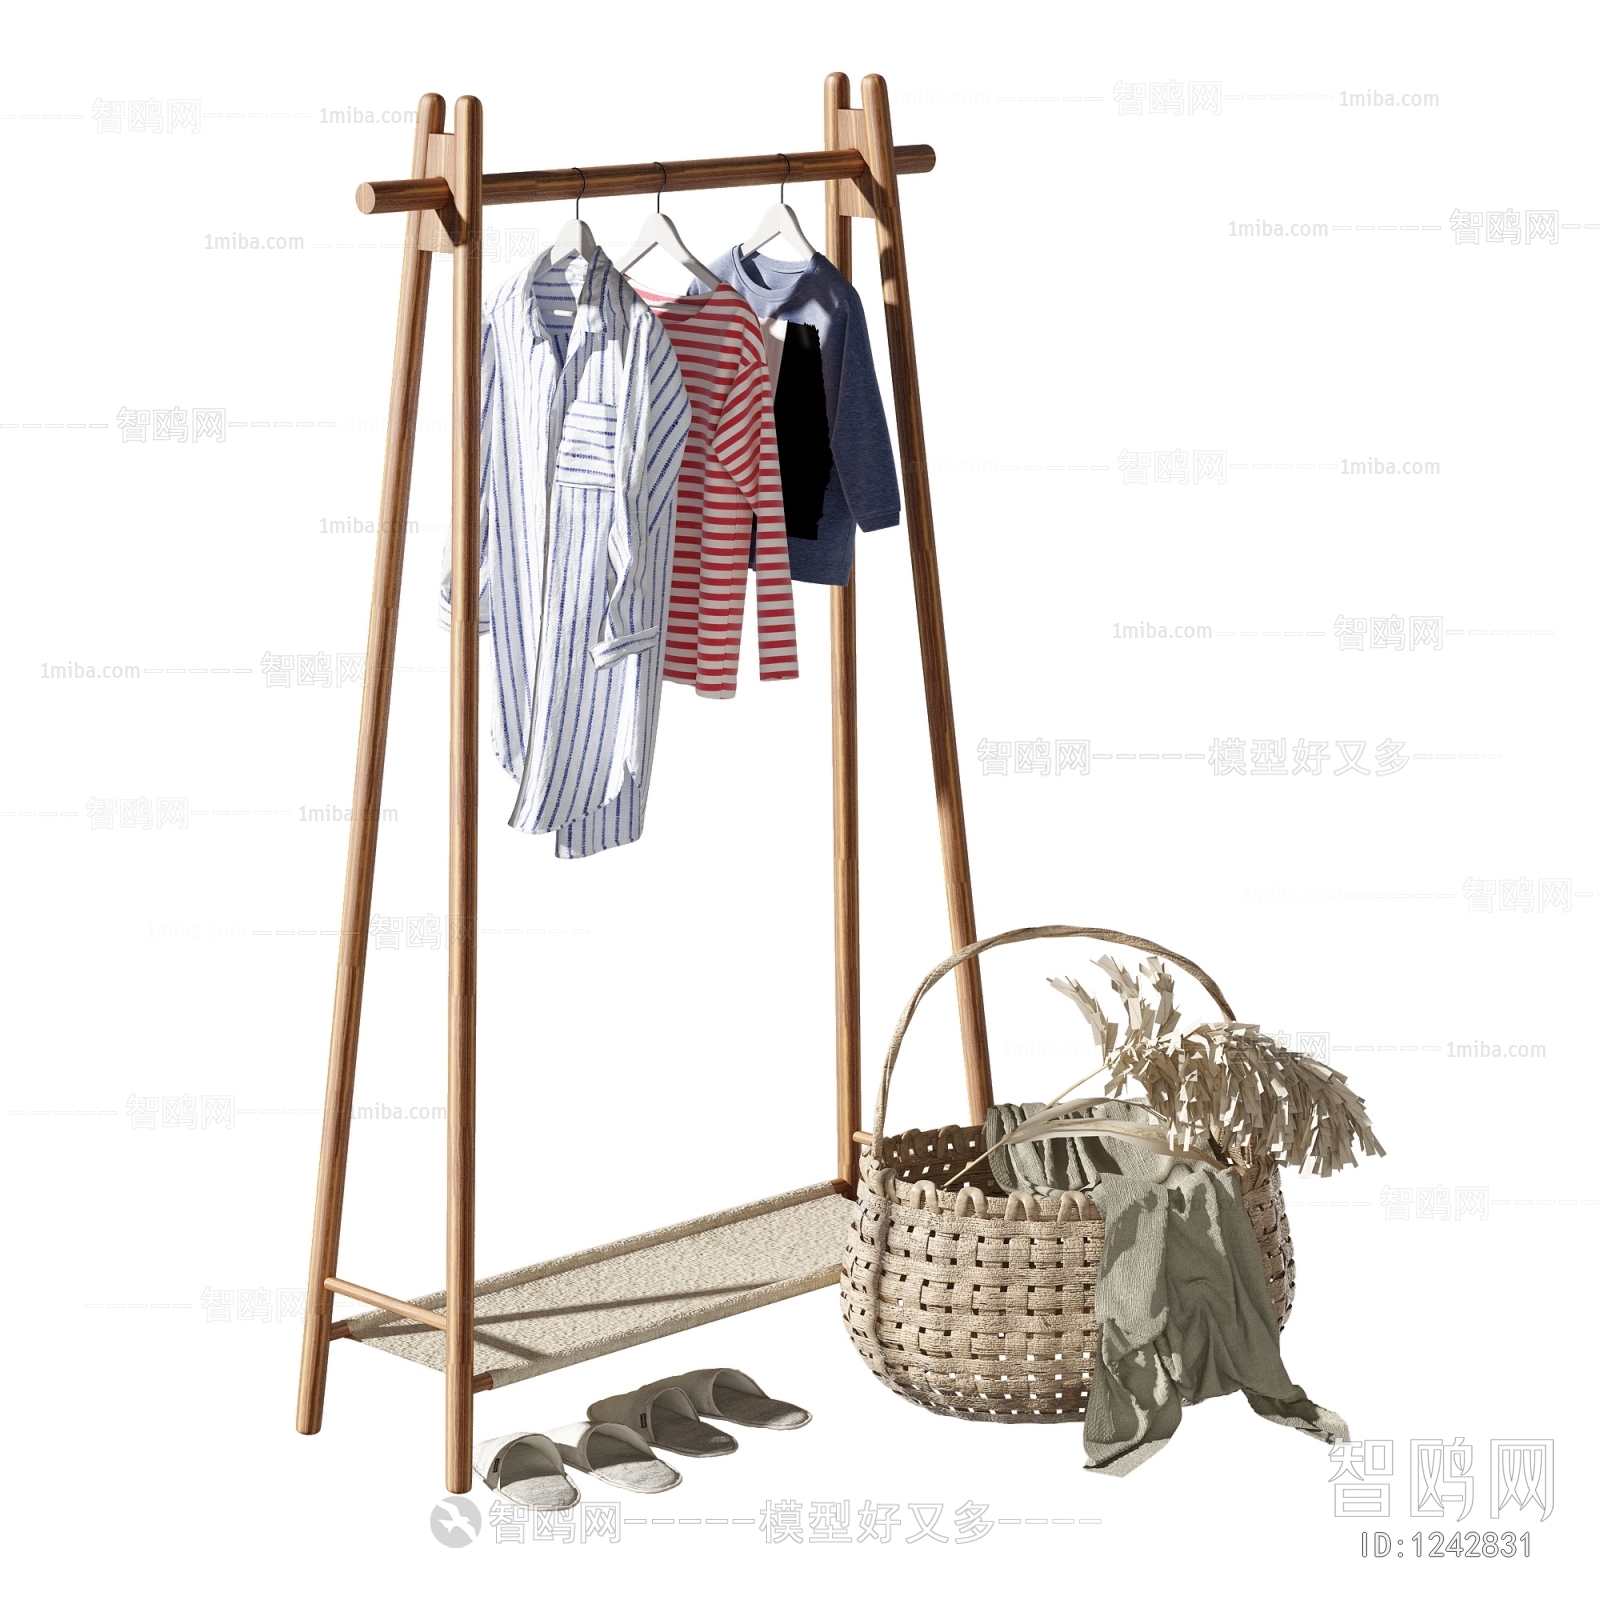 Wabi-sabi Style Coat Hanger